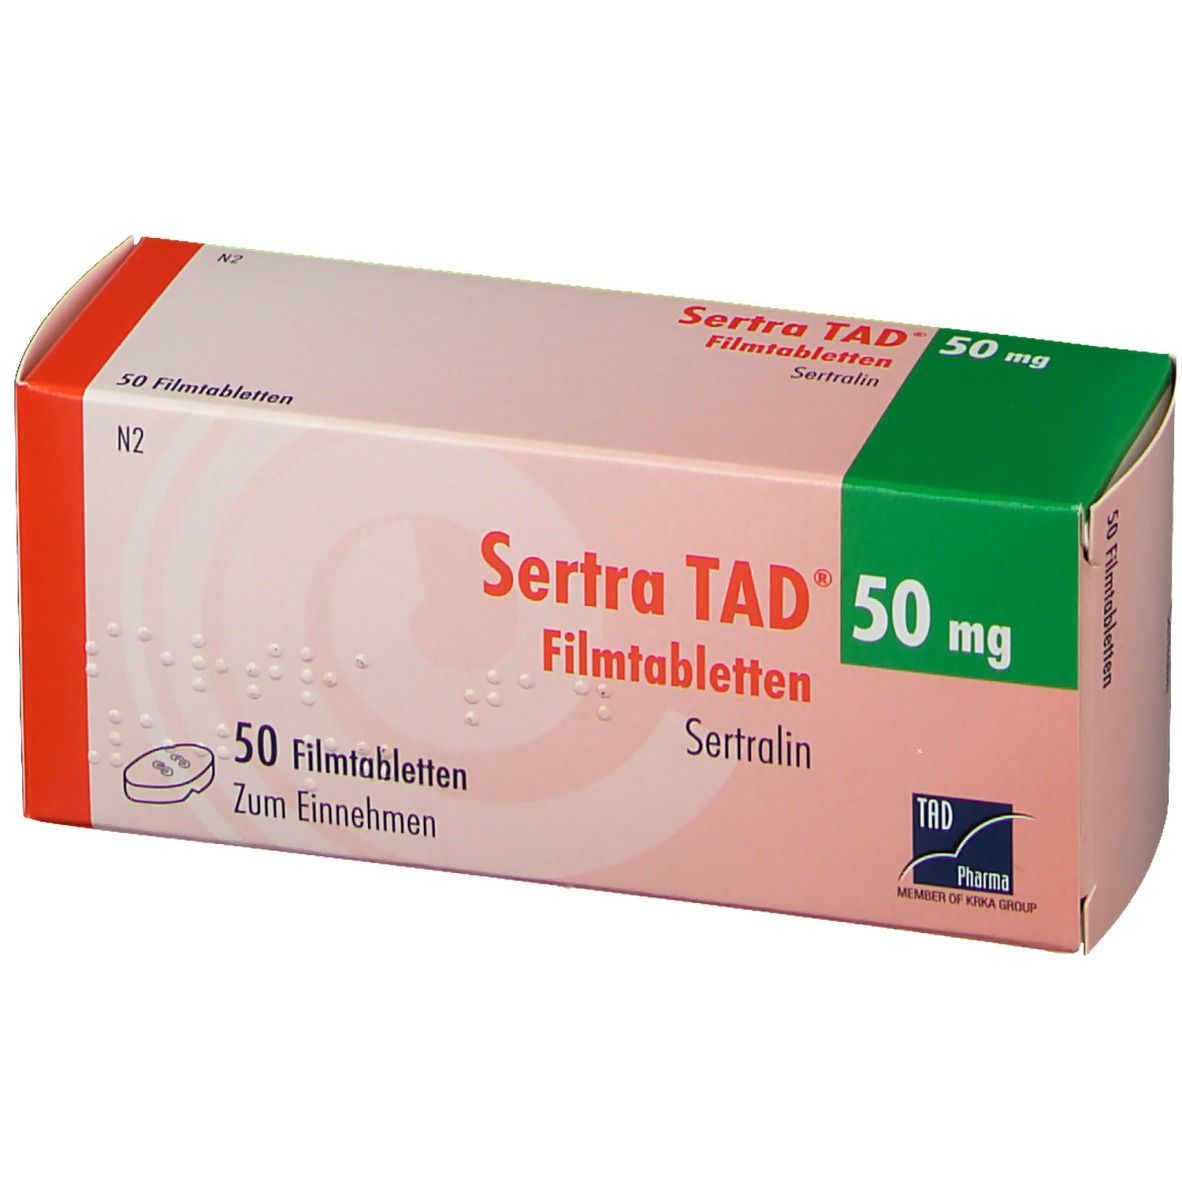 Sertra TAD® 50 mg